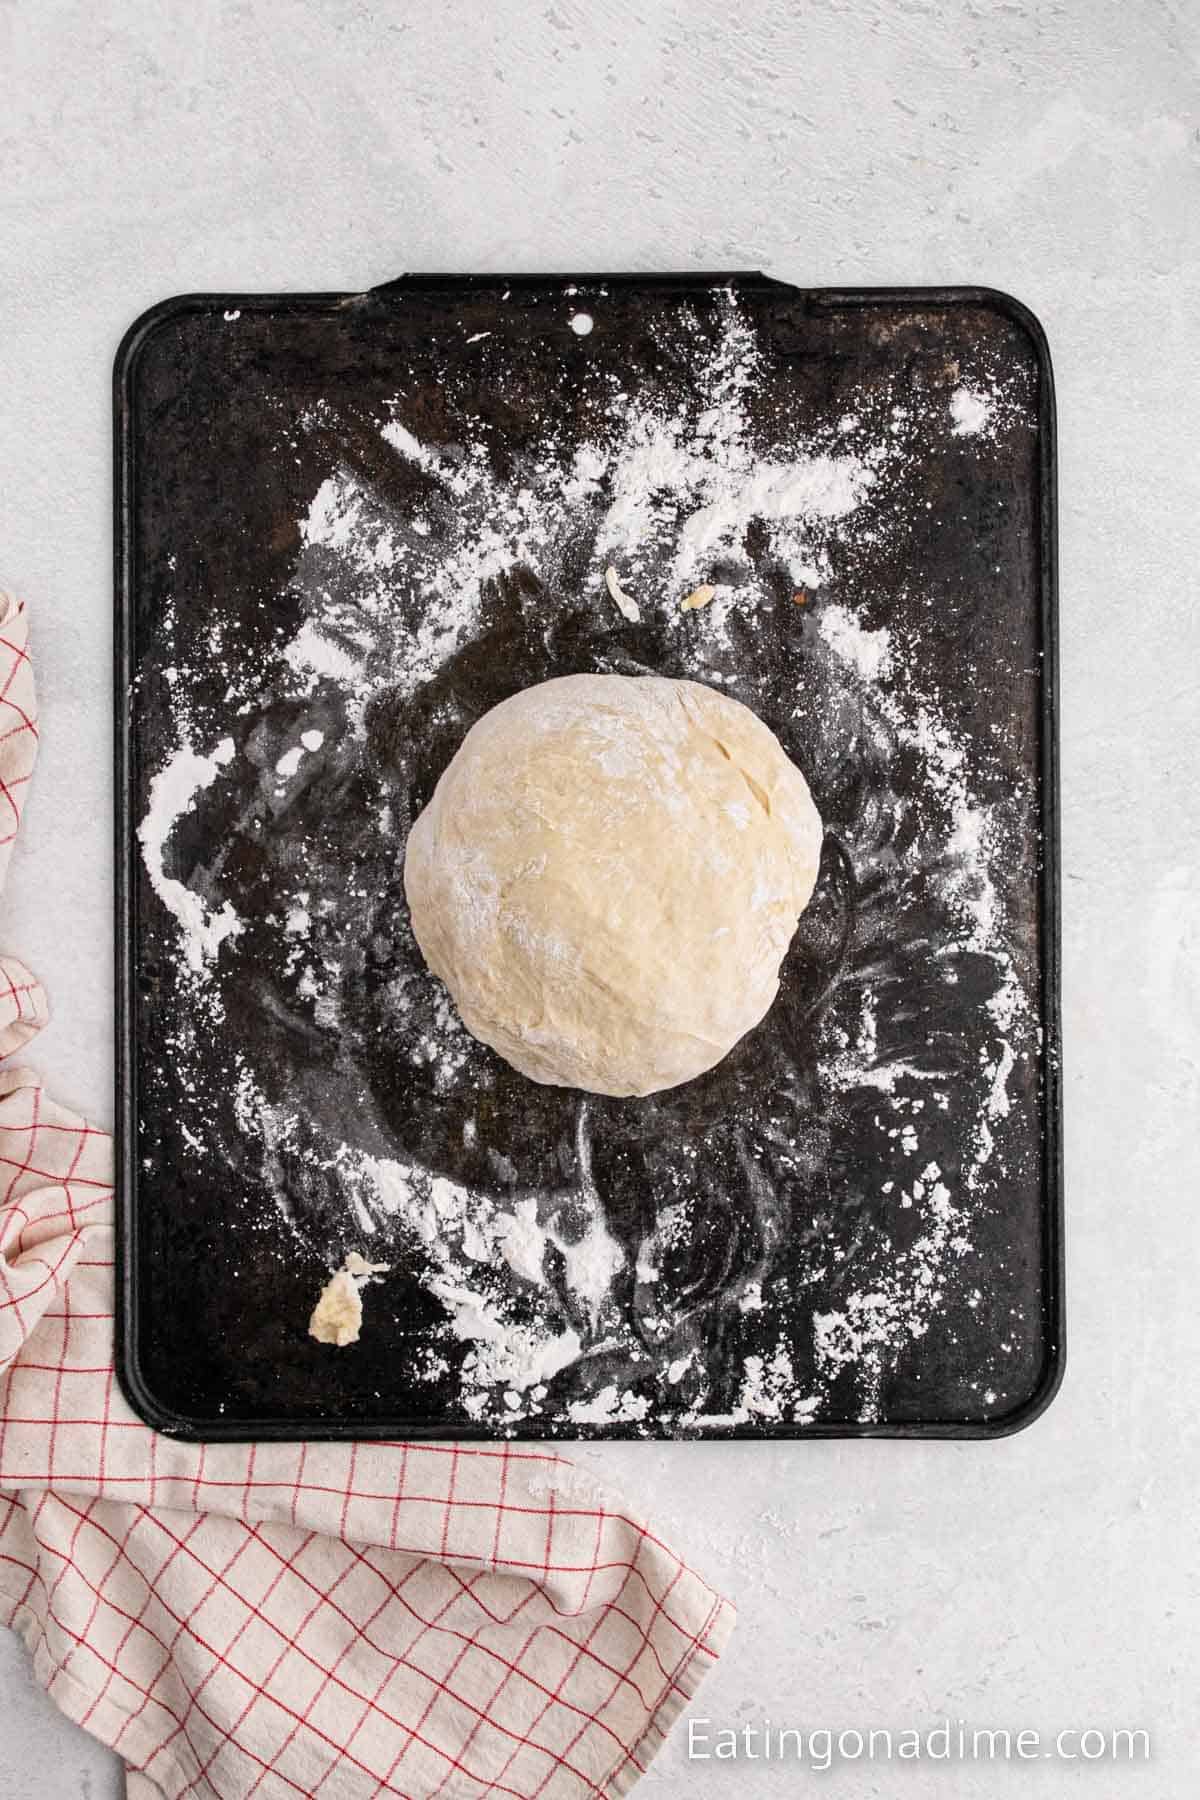 Dough ball on a floured surface